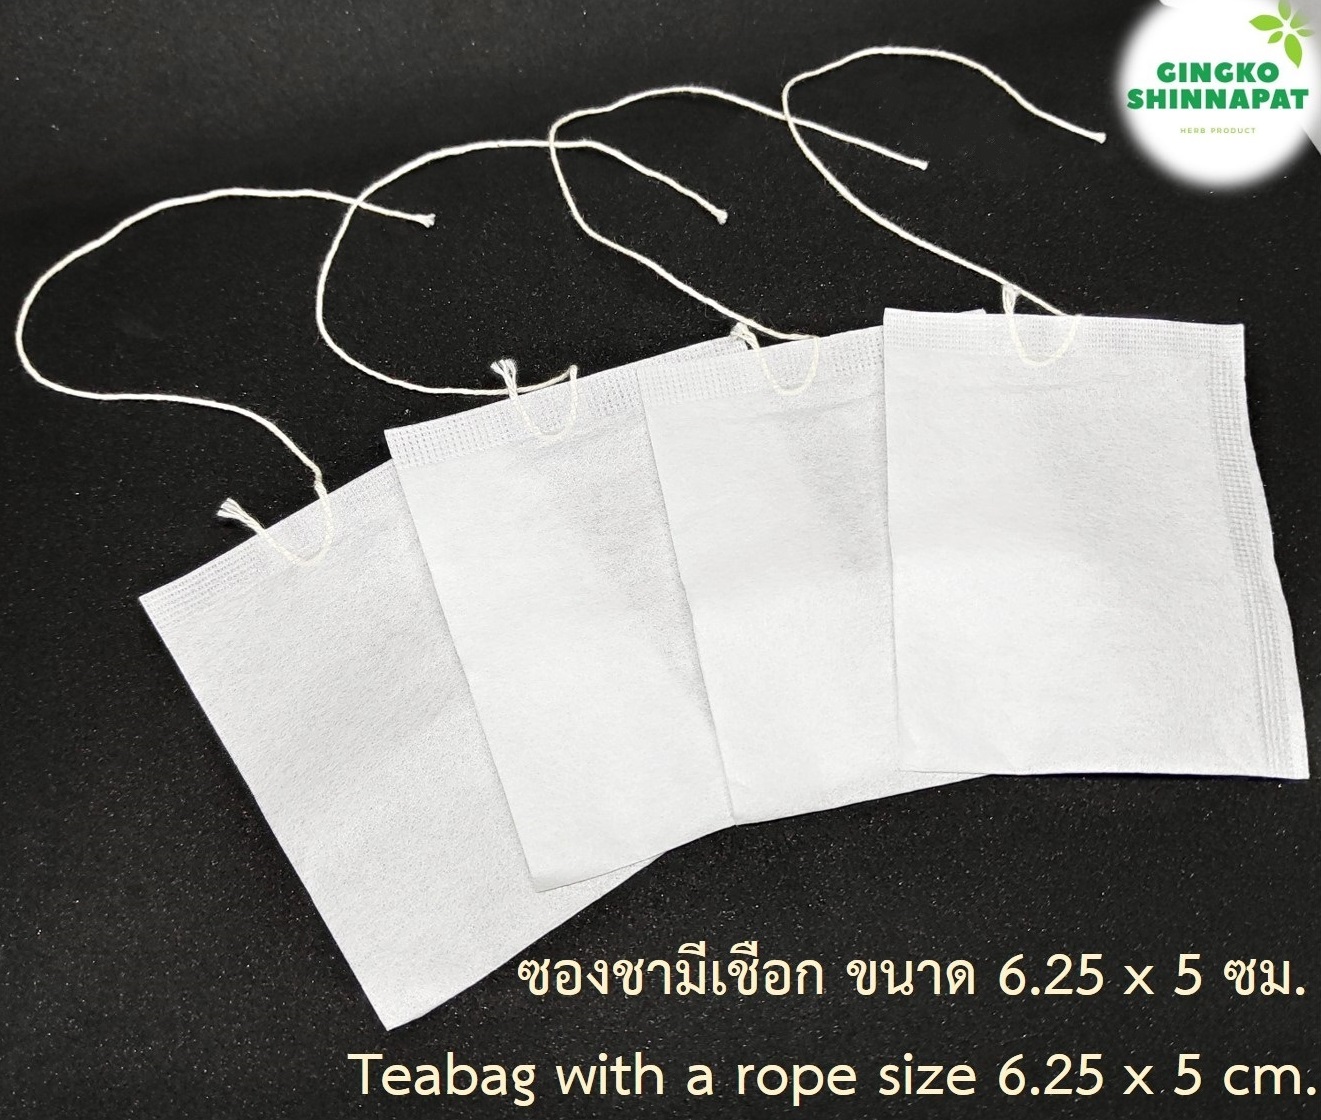 ซองชา ถุงชา มีเชือก (Teabag with a rope) เยื่อกระดาษเกรด A 100 ซอง ขนาด 6.25x5 cm. เพิ่มอรรถรสในการดื่มชา สะดวกในการ ชงชา แยกกากชาออกจาก น้ำชา